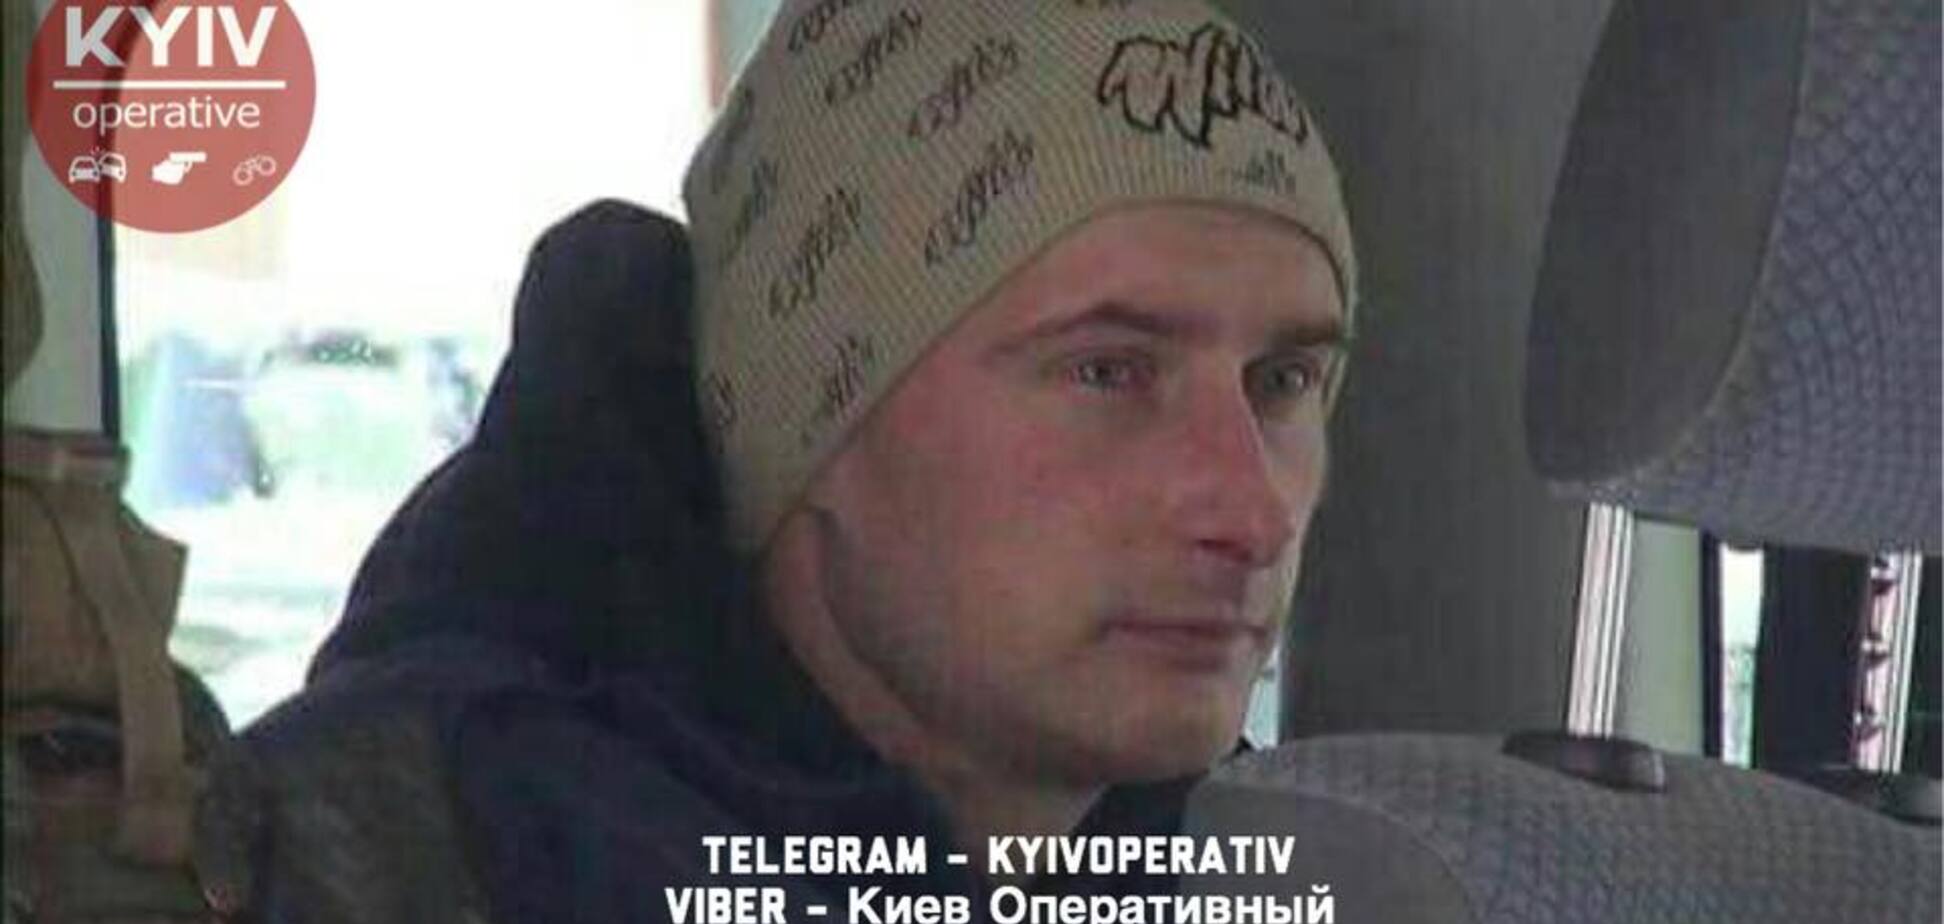 Потрібна допомога: в Києві зник ветеран АТО. Опубліковано фото